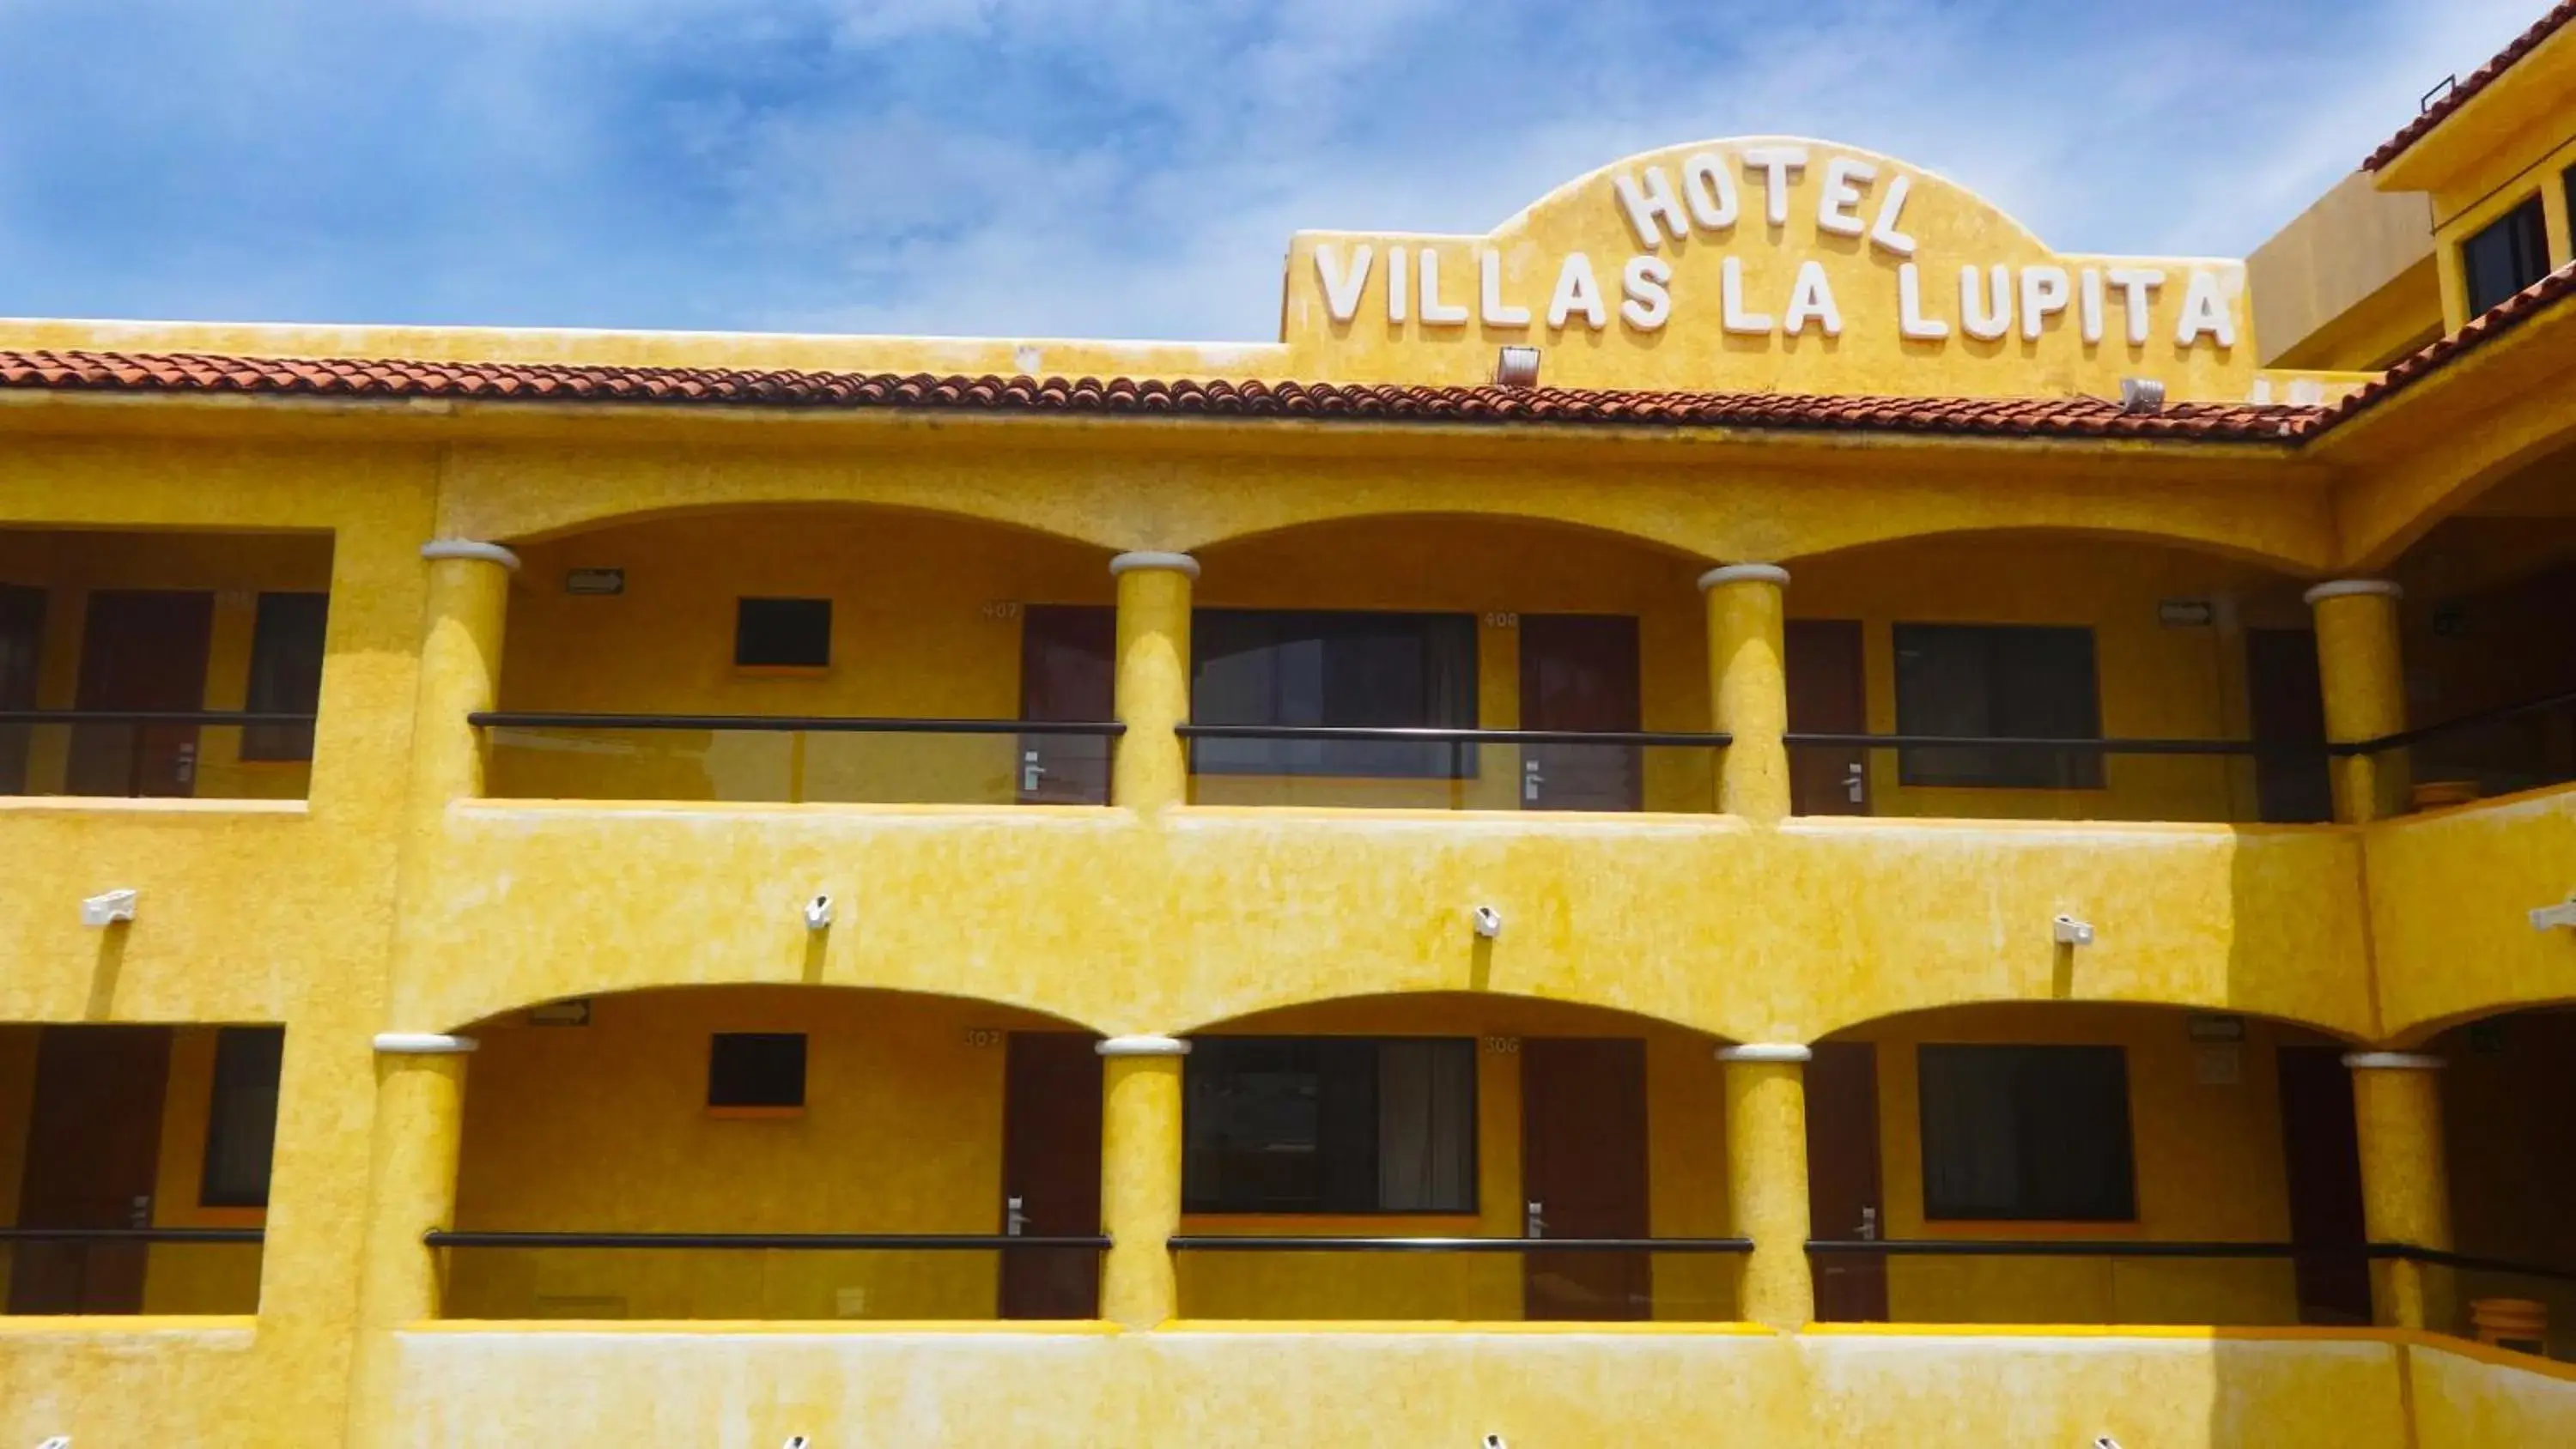 Property Building in Villas La Lupita